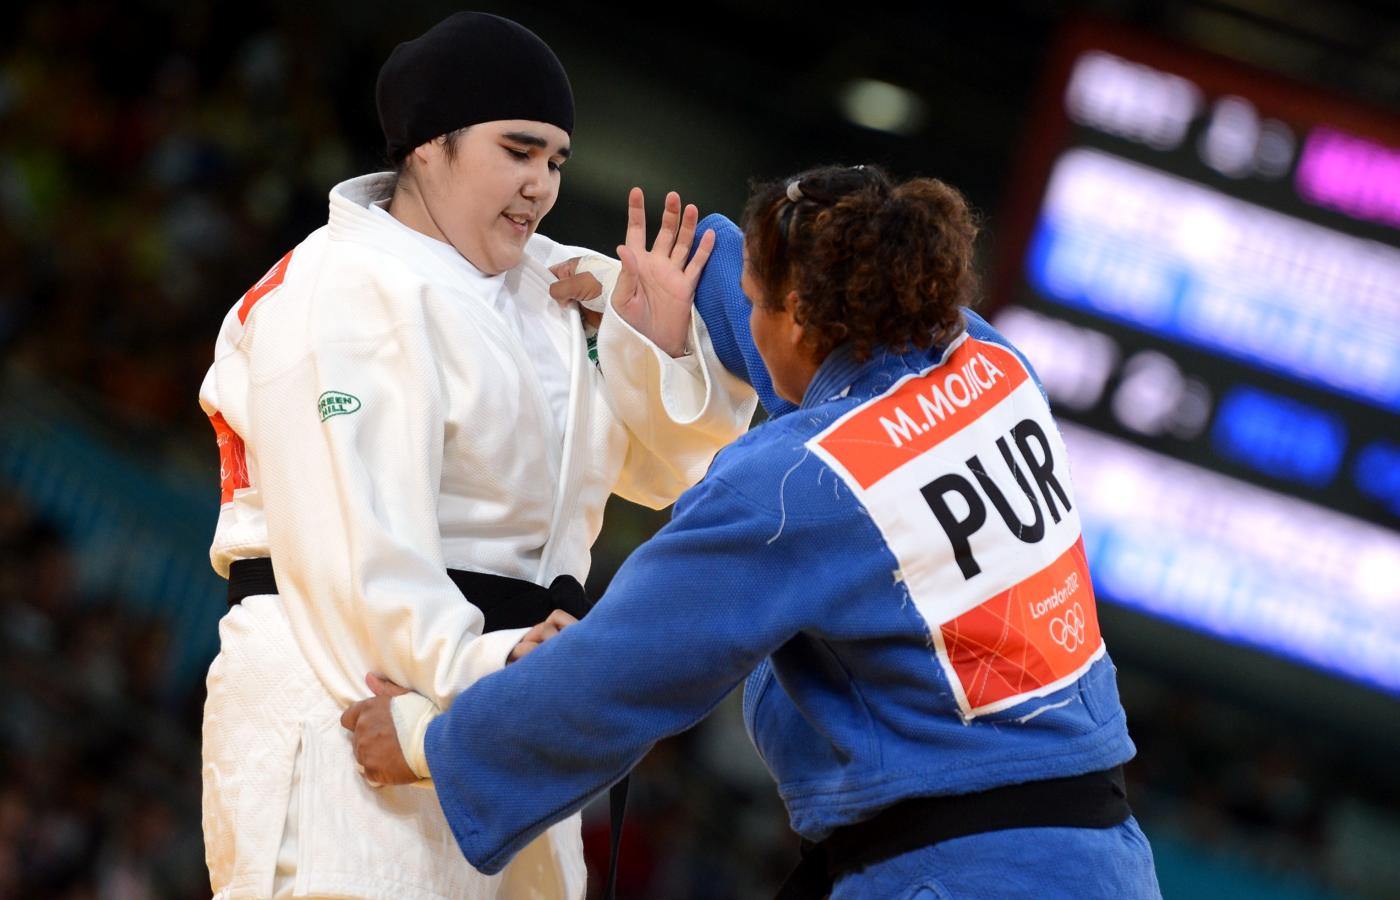 Występ 16-letniej judoczki Wodżdan Shahrkhani poprzedziły protesty. Po walce w jej kierunku posypały się też gromy w Internecie.